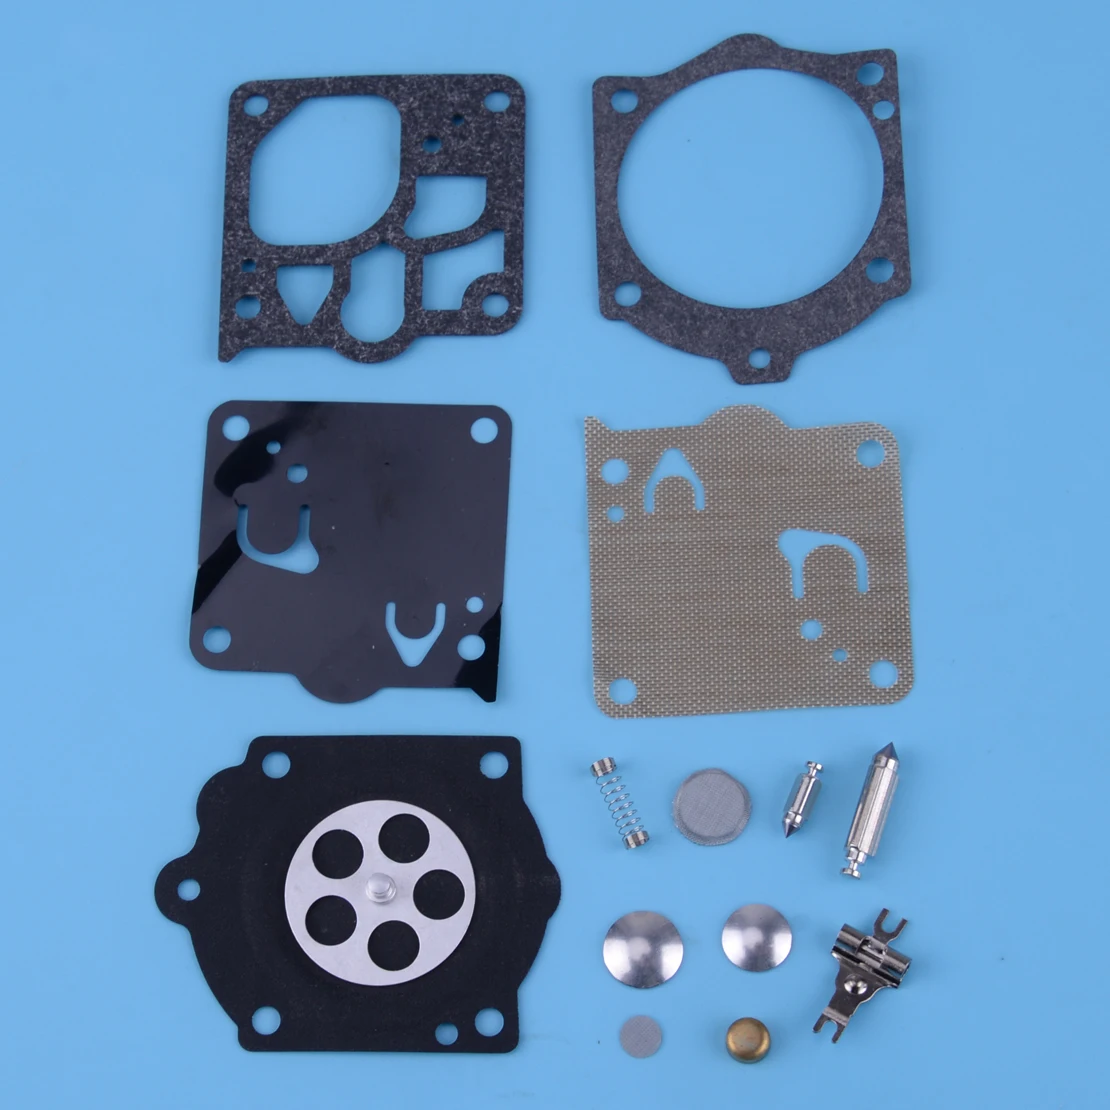 

Carburetor Carb Rebuild Repair Kit Gasket Diaphragm Fit For Stihl 066 050 051 056 064 076 MS660